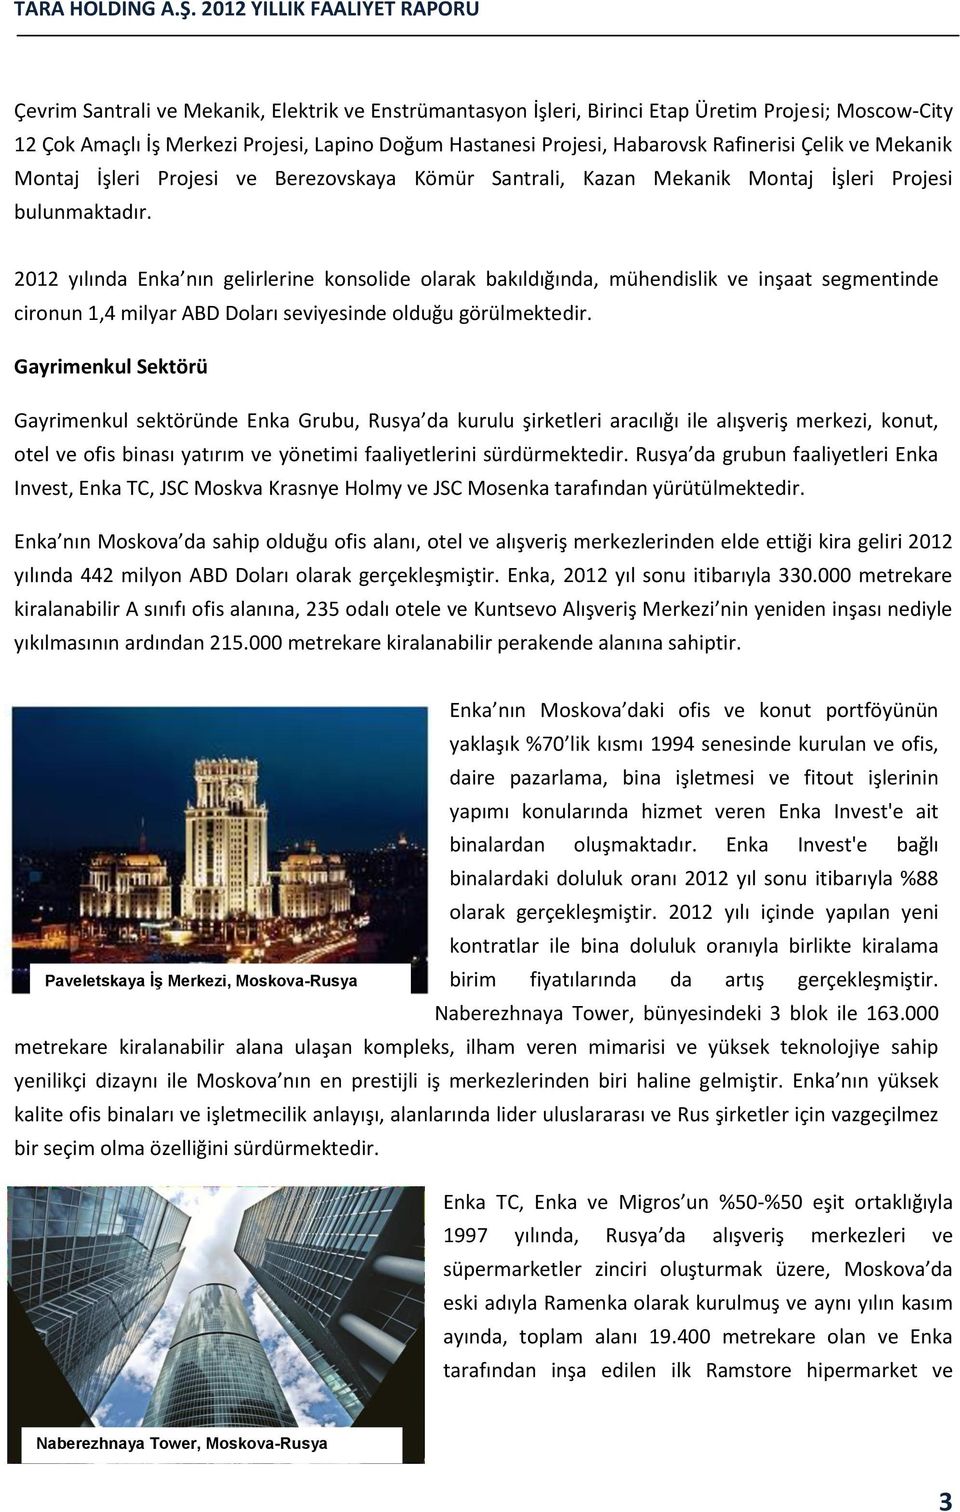 2012 yılında Enka nın gelirlerine konsolide olarak bakıldığında, mühendislik ve inşaat segmentinde cironun 1,4 milyar ABD Doları seviyesinde olduğu görülmektedir.